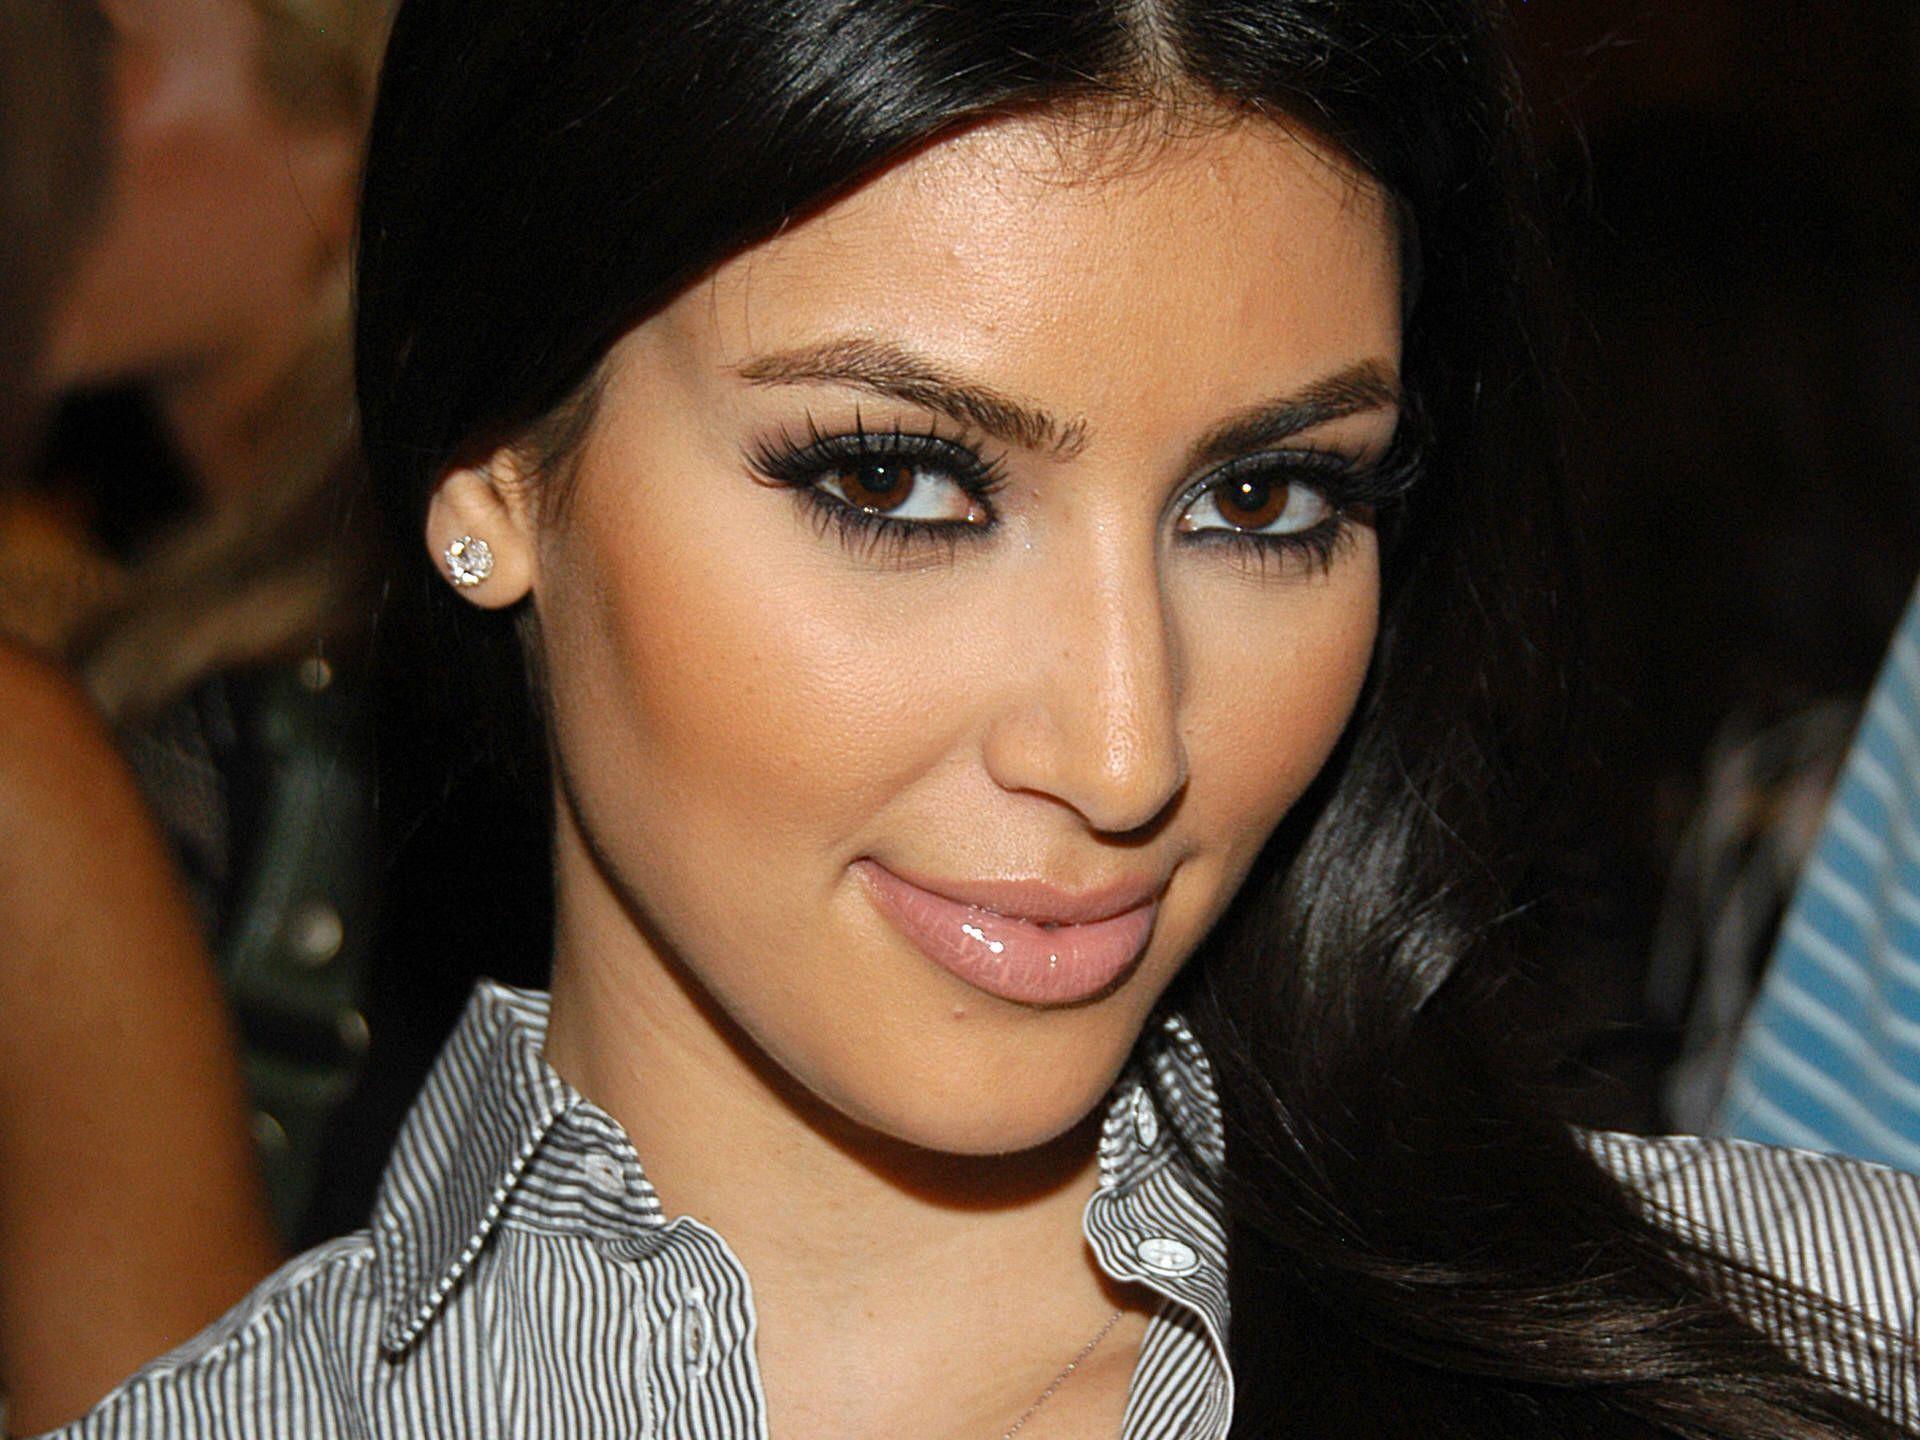 Kim Kardashian Download 3987 HD Wallpaper Picture. Top Wallpaper